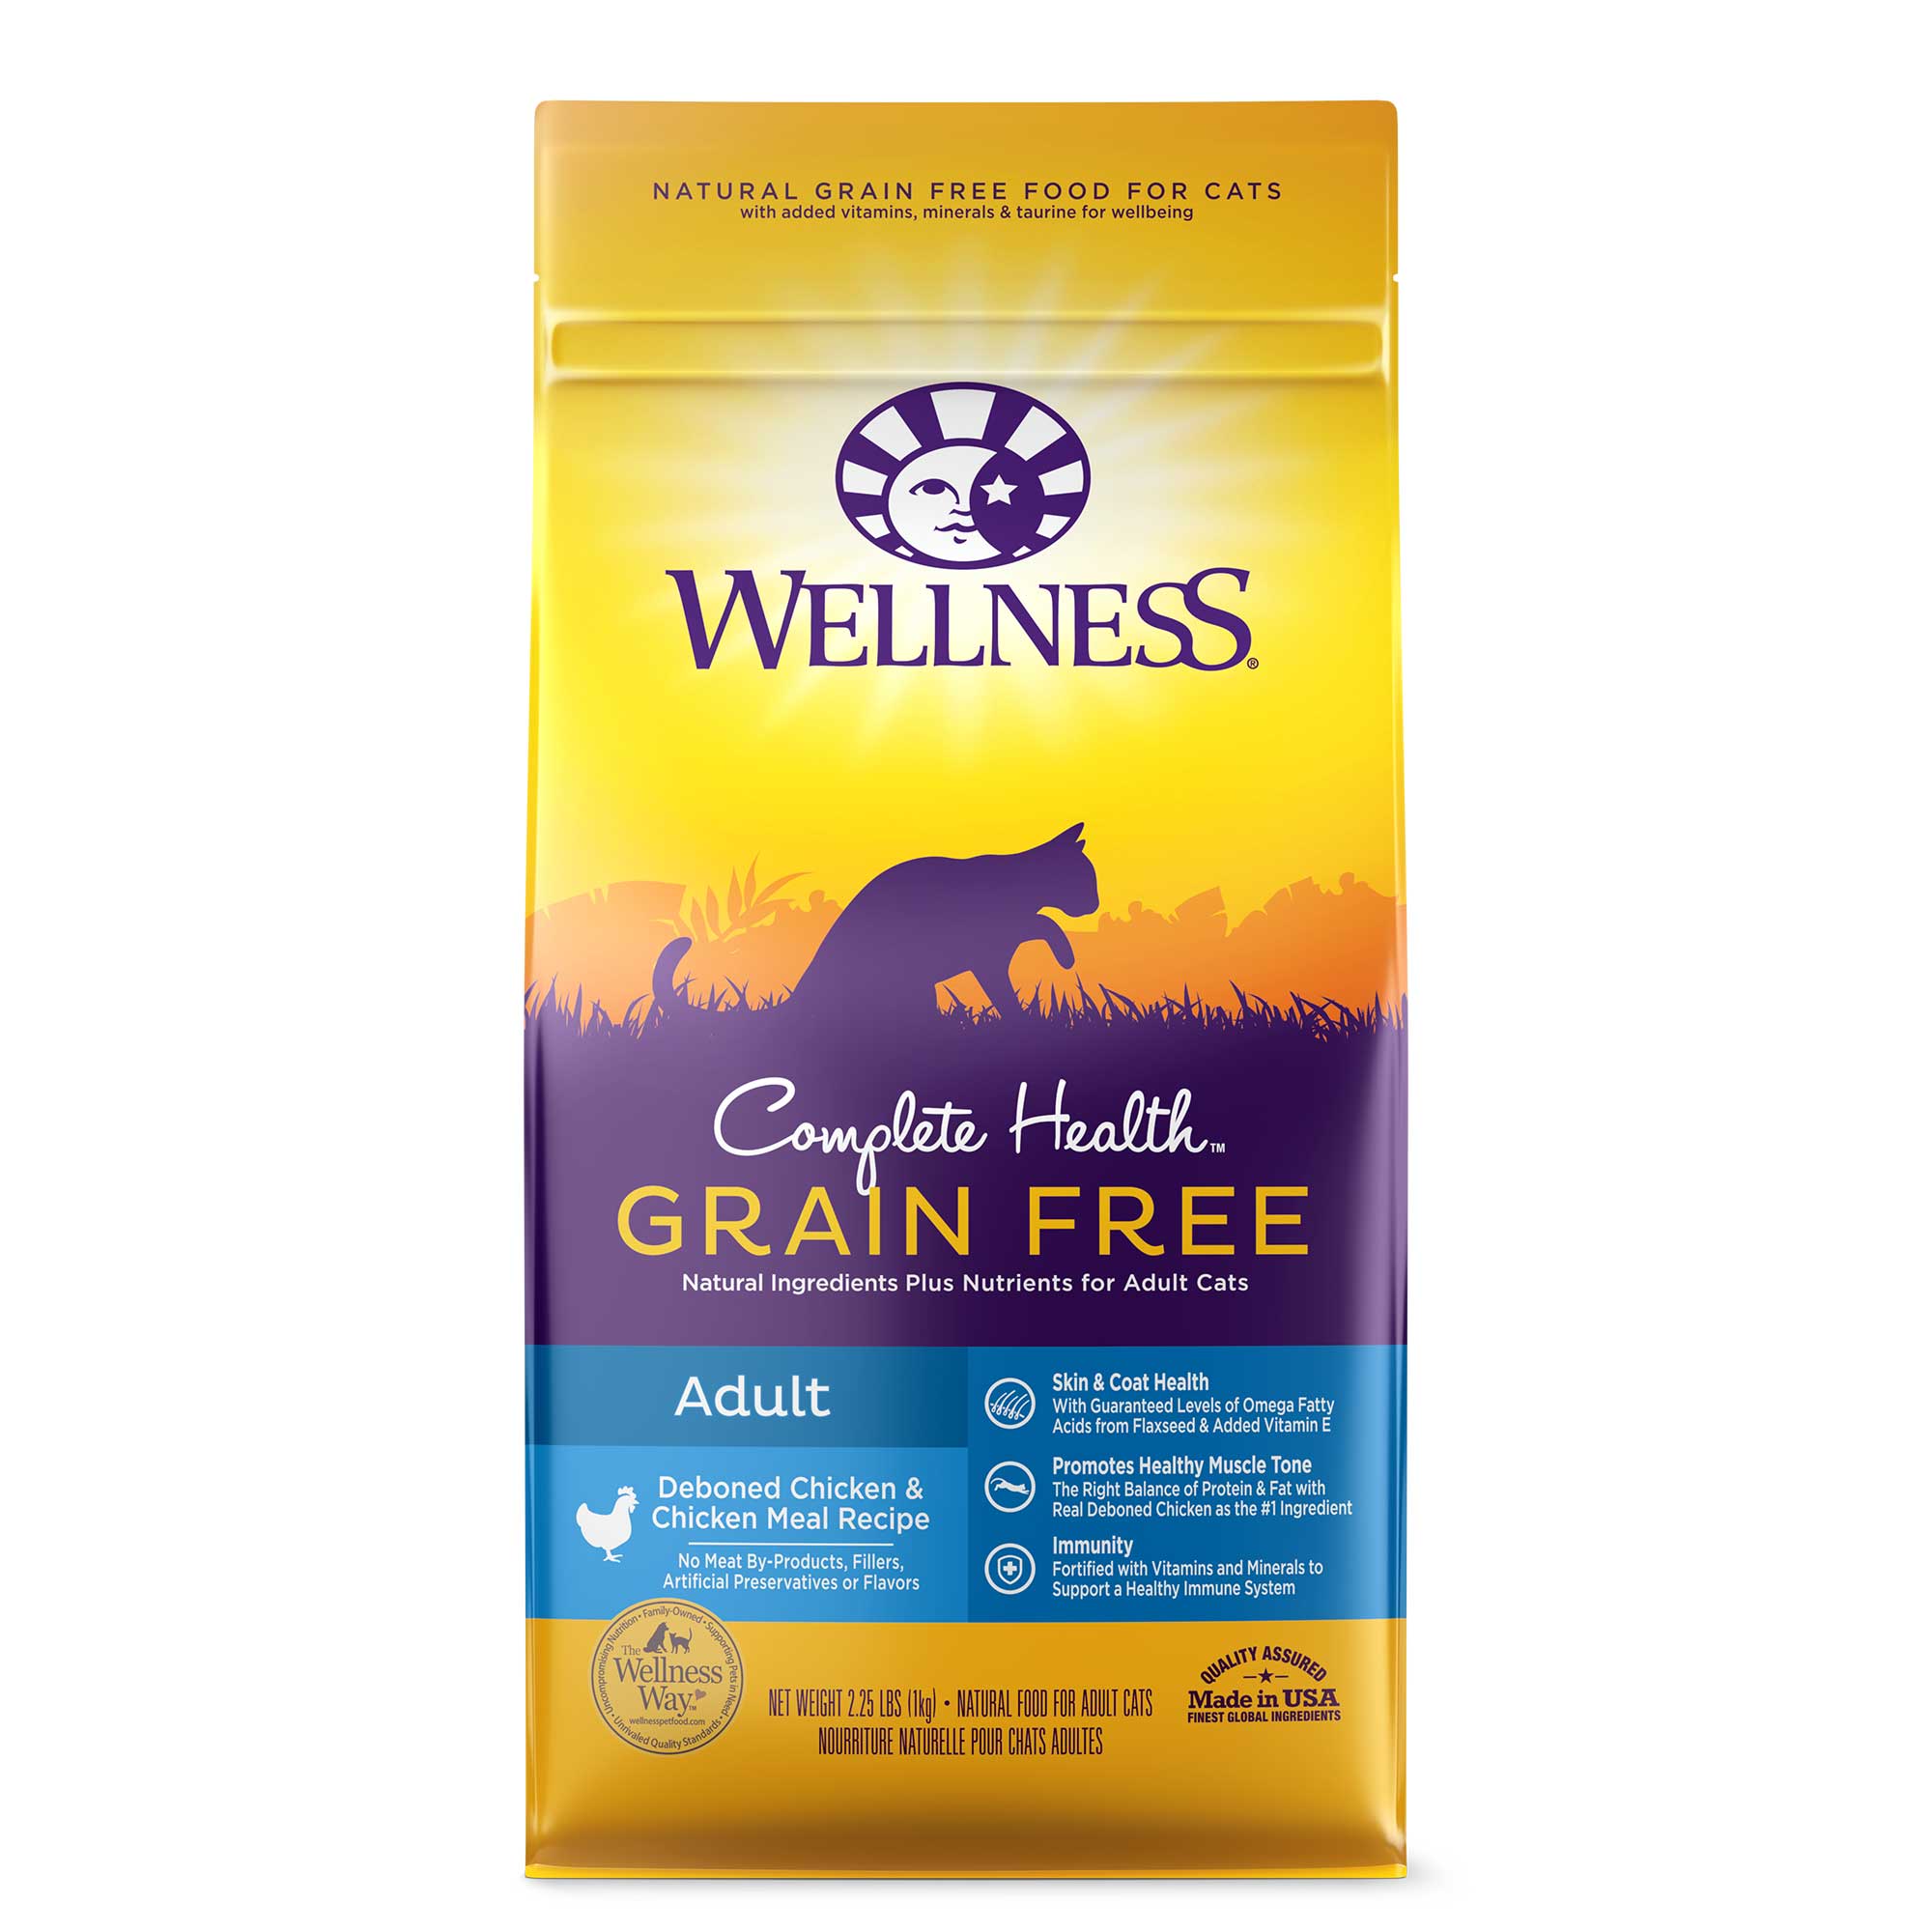 Wellness Complete Health Grain Free Deboned Chicken & Chicken Meal